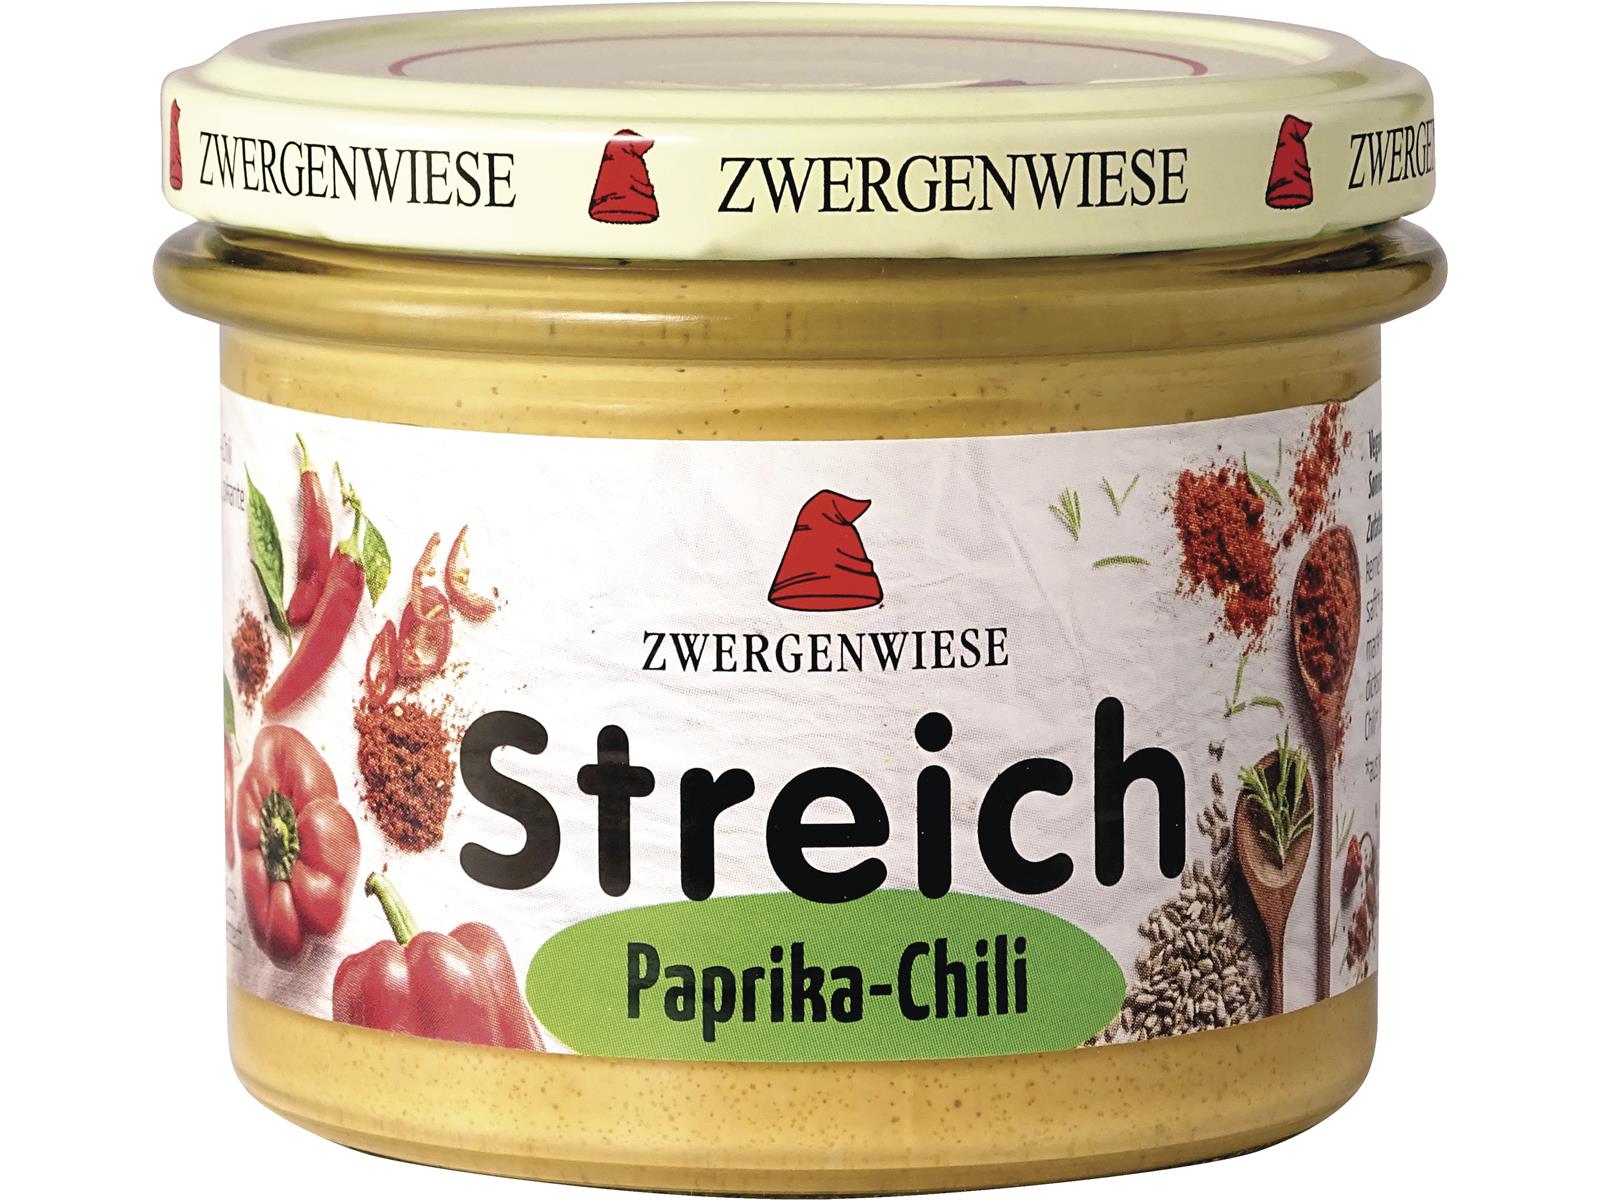 Zwergenwiese Paprika-Chili Streich 180g